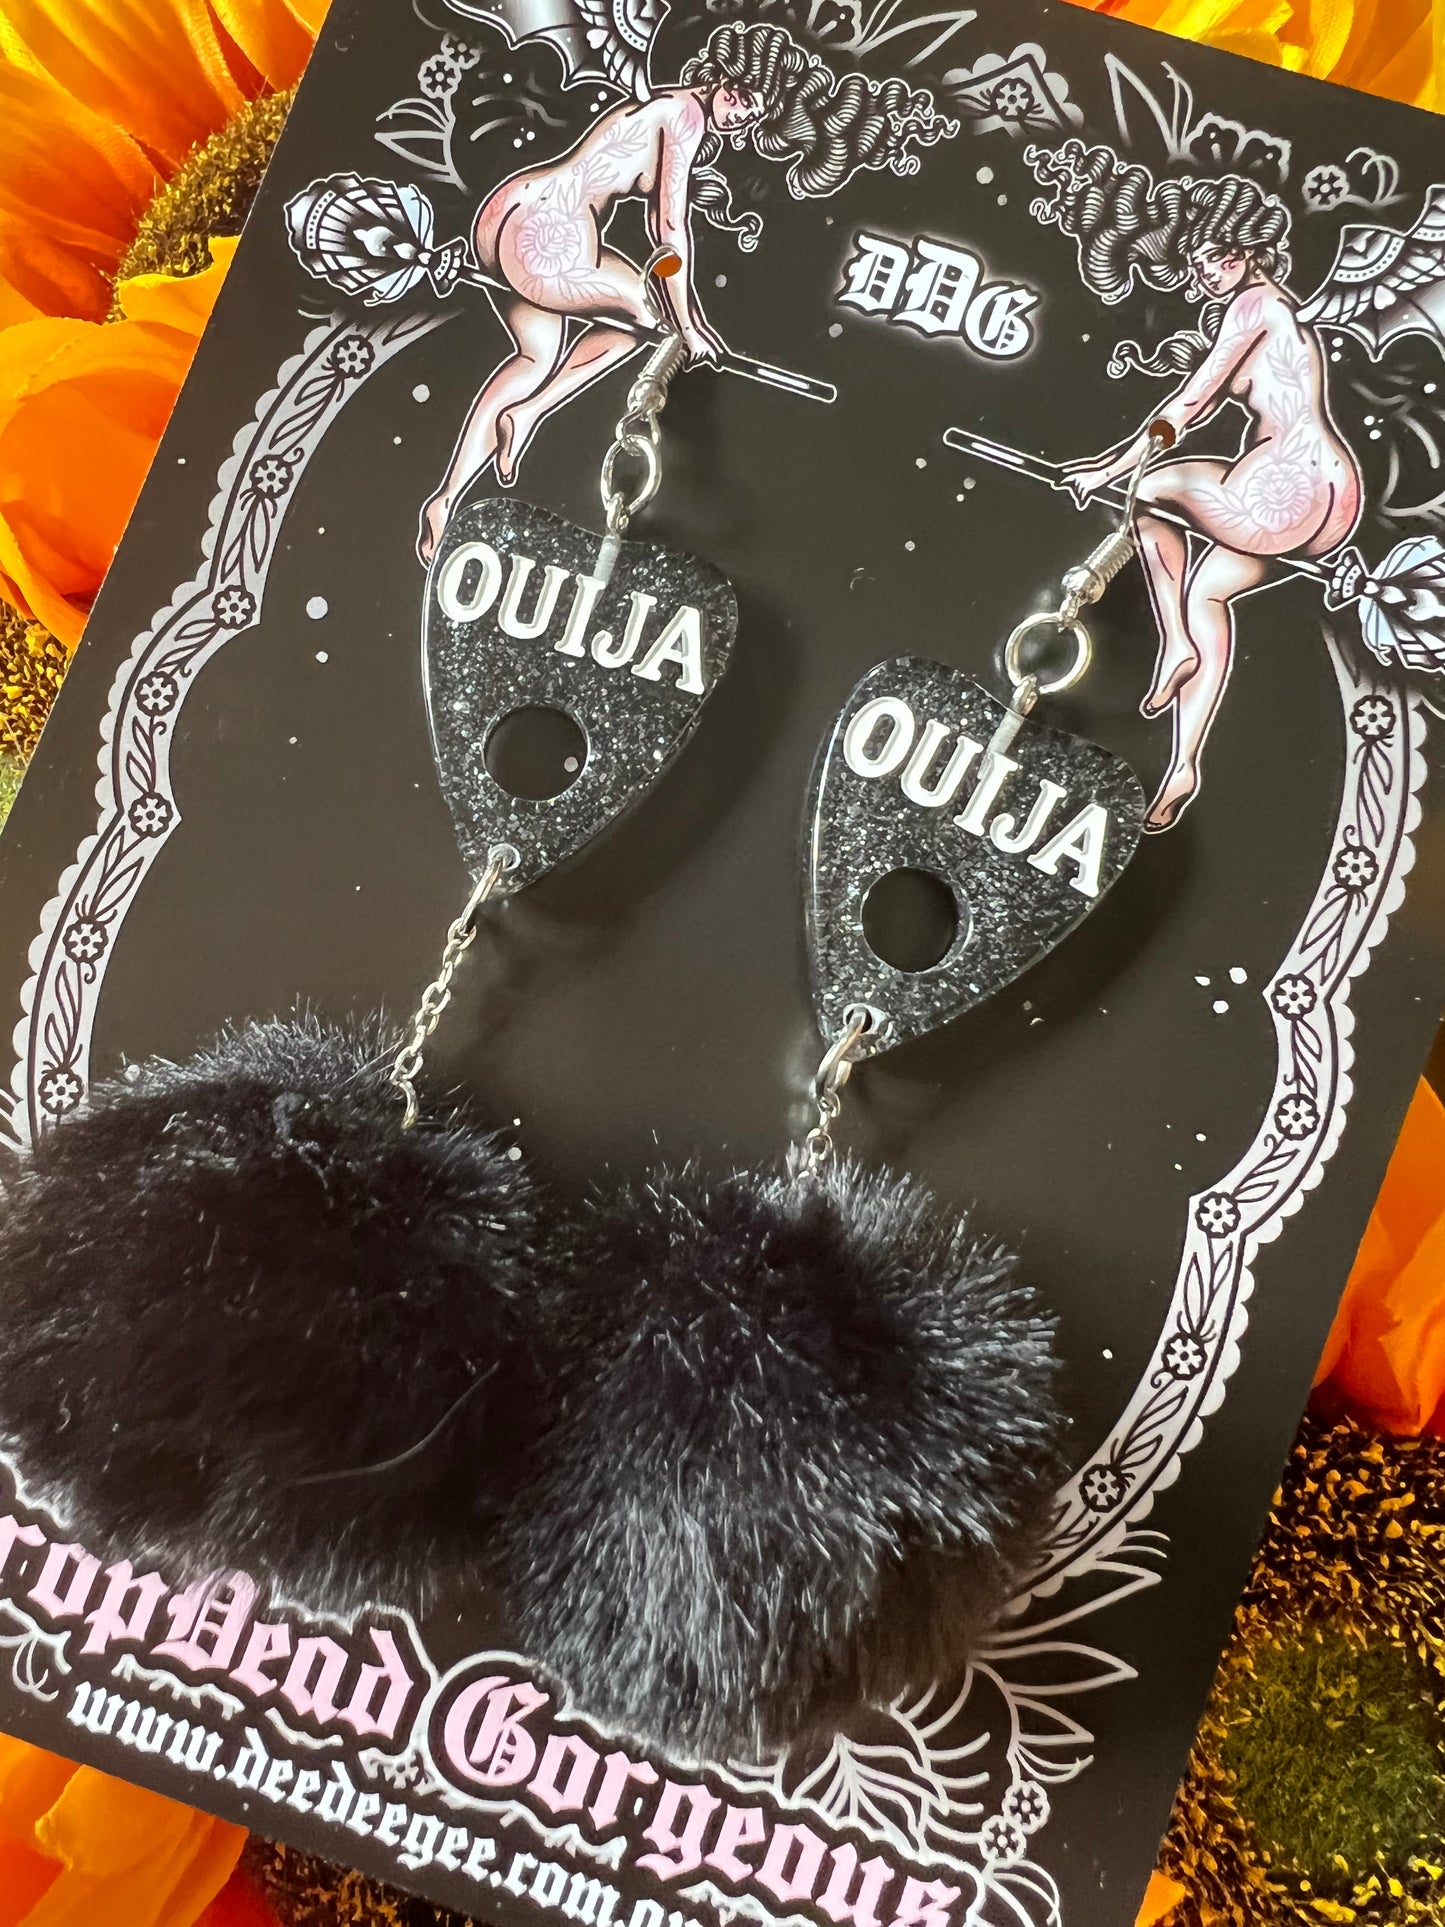 FLUFF GOTH - Black Ouija Earrings